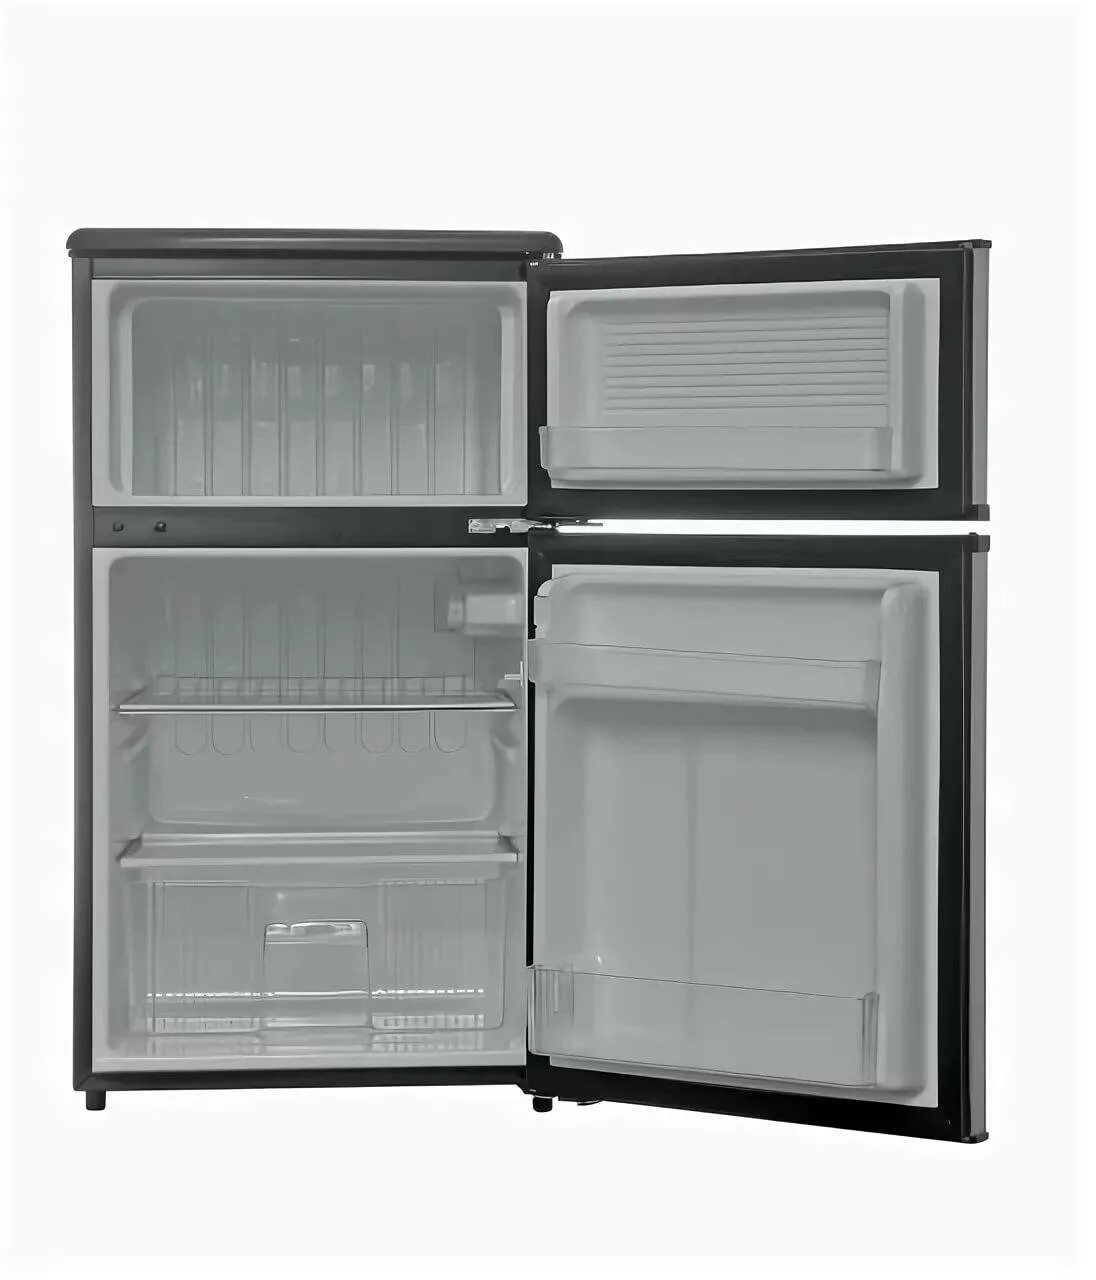 Холодильник 85 см высота. Холодильник Shivaki SHRF-90dp. Холодильник Shivaki Mini 85-90см. Холодильник шваки модель Surf 90dp. Холодильник мини-бар Shivaki SHRF-55chs.